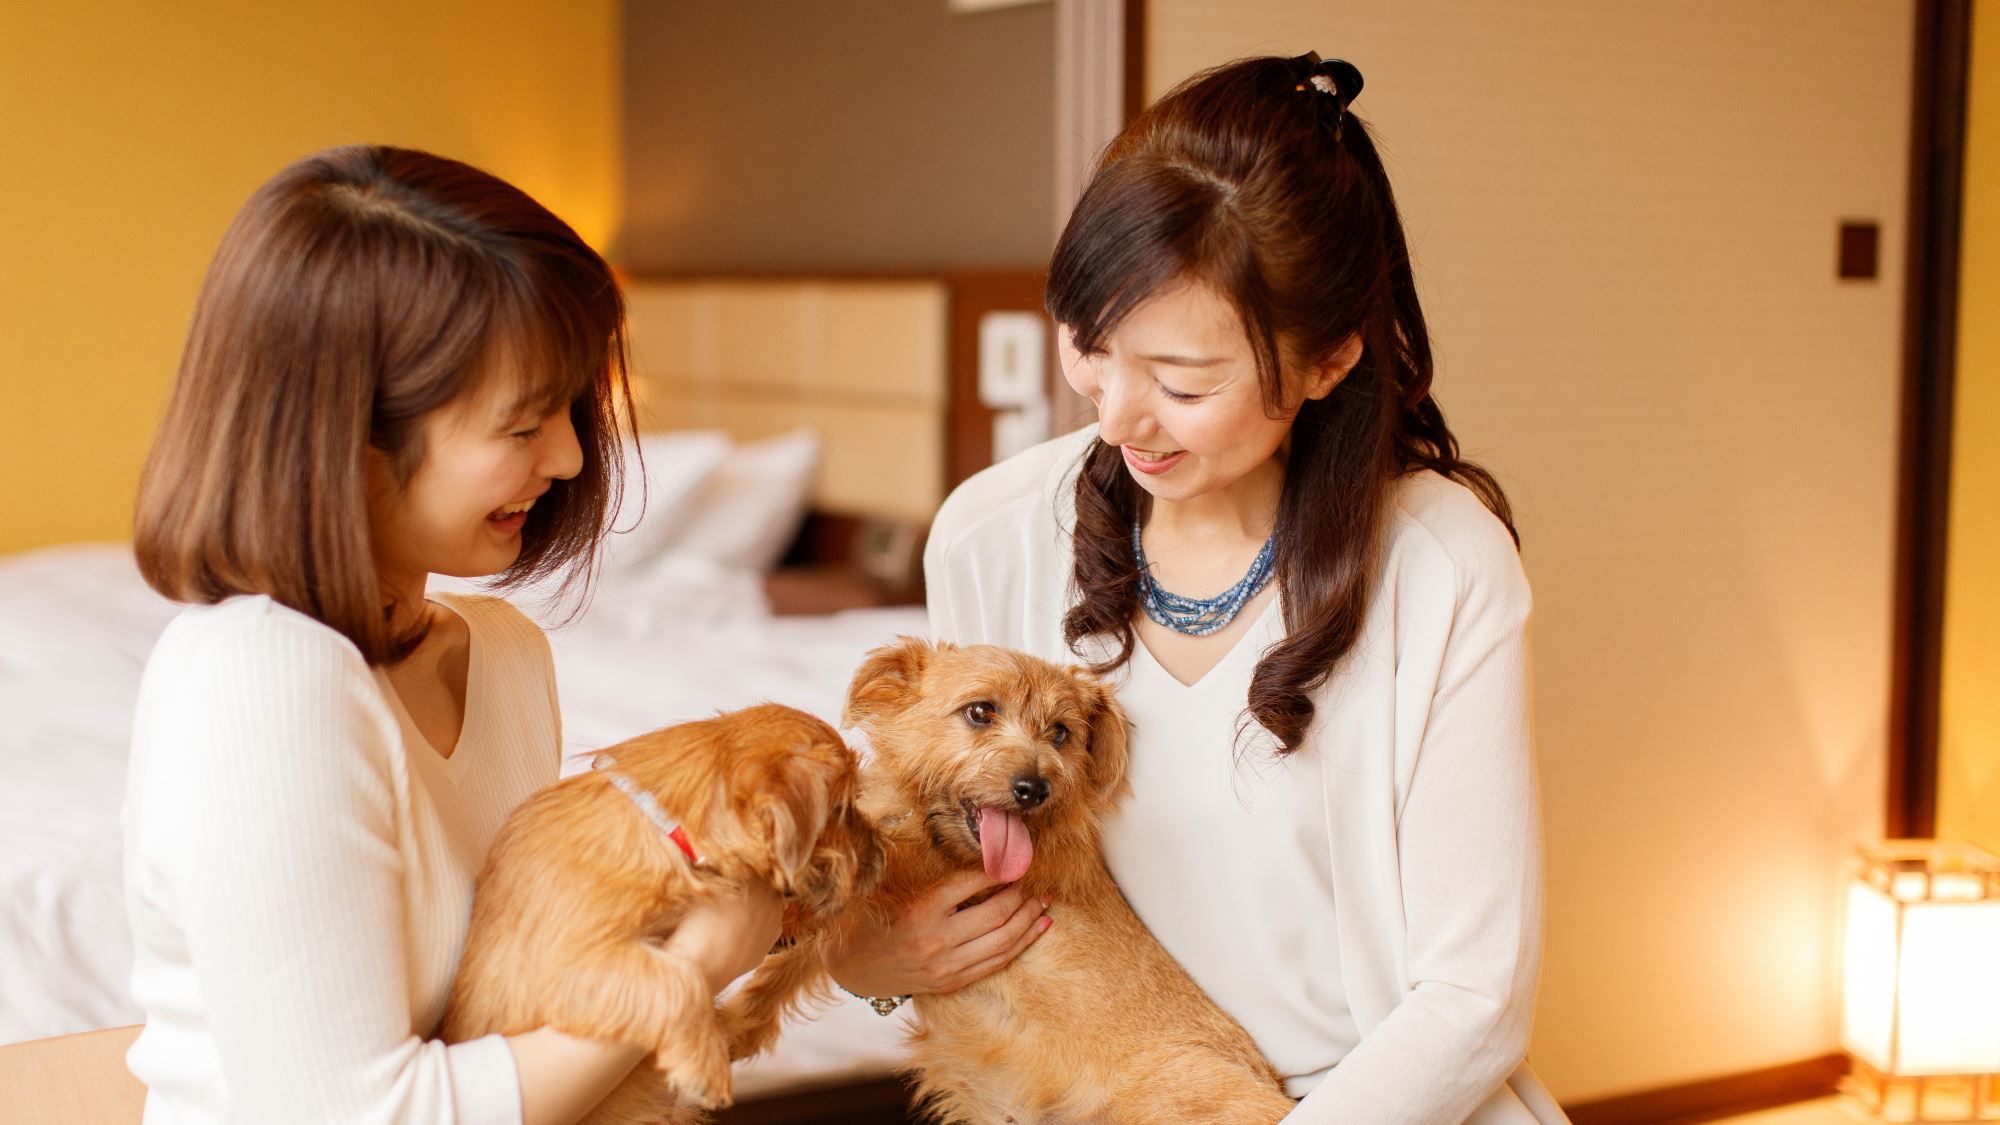 【愛犬同伴専用客室】 小型犬(6㎏以下)で1室あたり2頭まで同伴可能です。